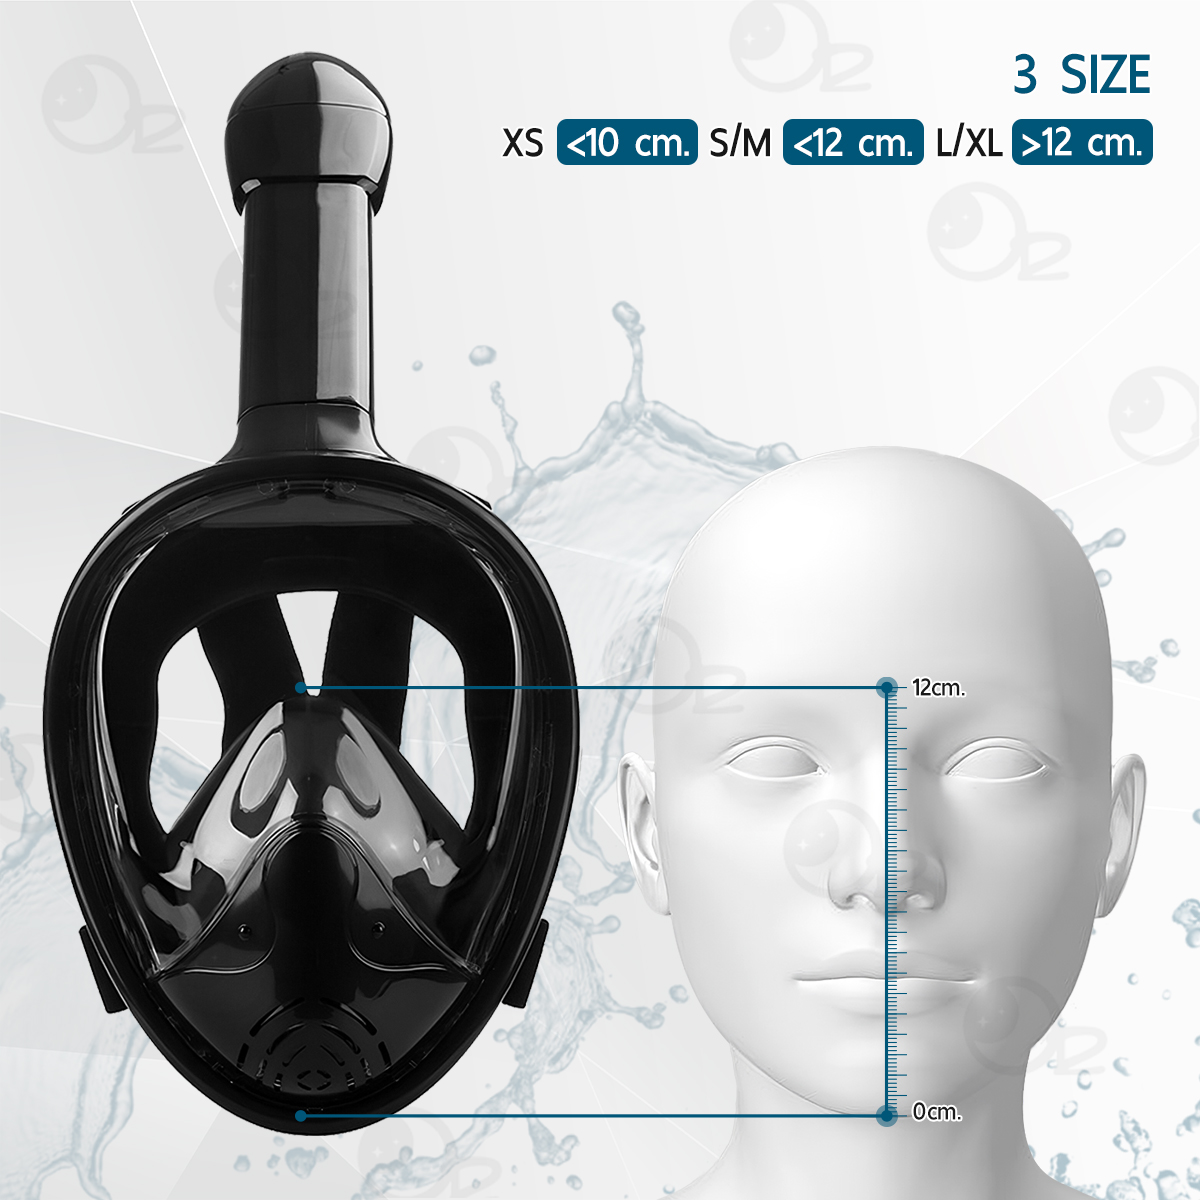 คำอธิบายเพิ่มเติมเกี่ยวกับ ORZ - หน้ากากดำน้ำ ขนาด S/M แบบเต็มหน้า ไม่ต้องคาบ ท่อหายใจ กันฝ้า พร้อมขาติดกล้อง - Diving mask 180° View Snorkel Mask Panoramic Full Face Design Size S/M